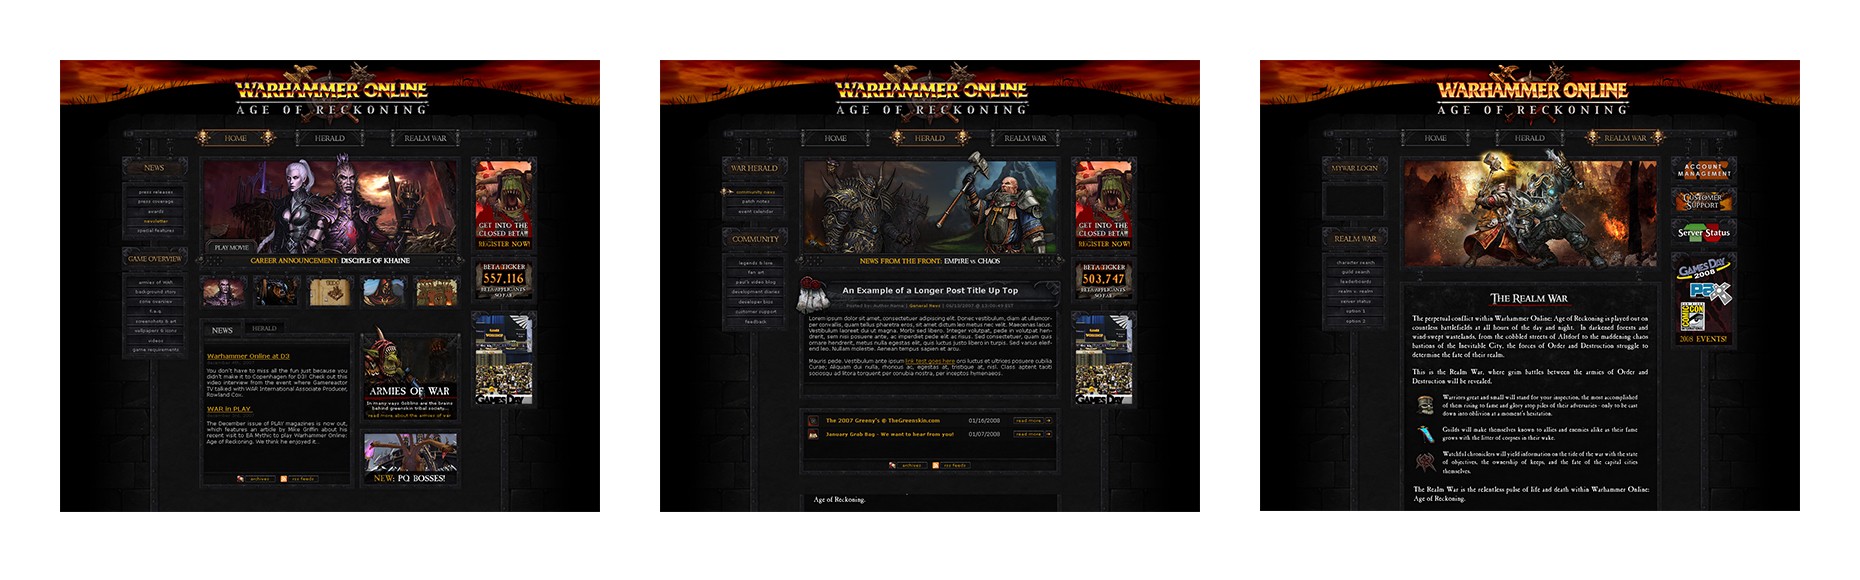 Case Study: Warhammer Online